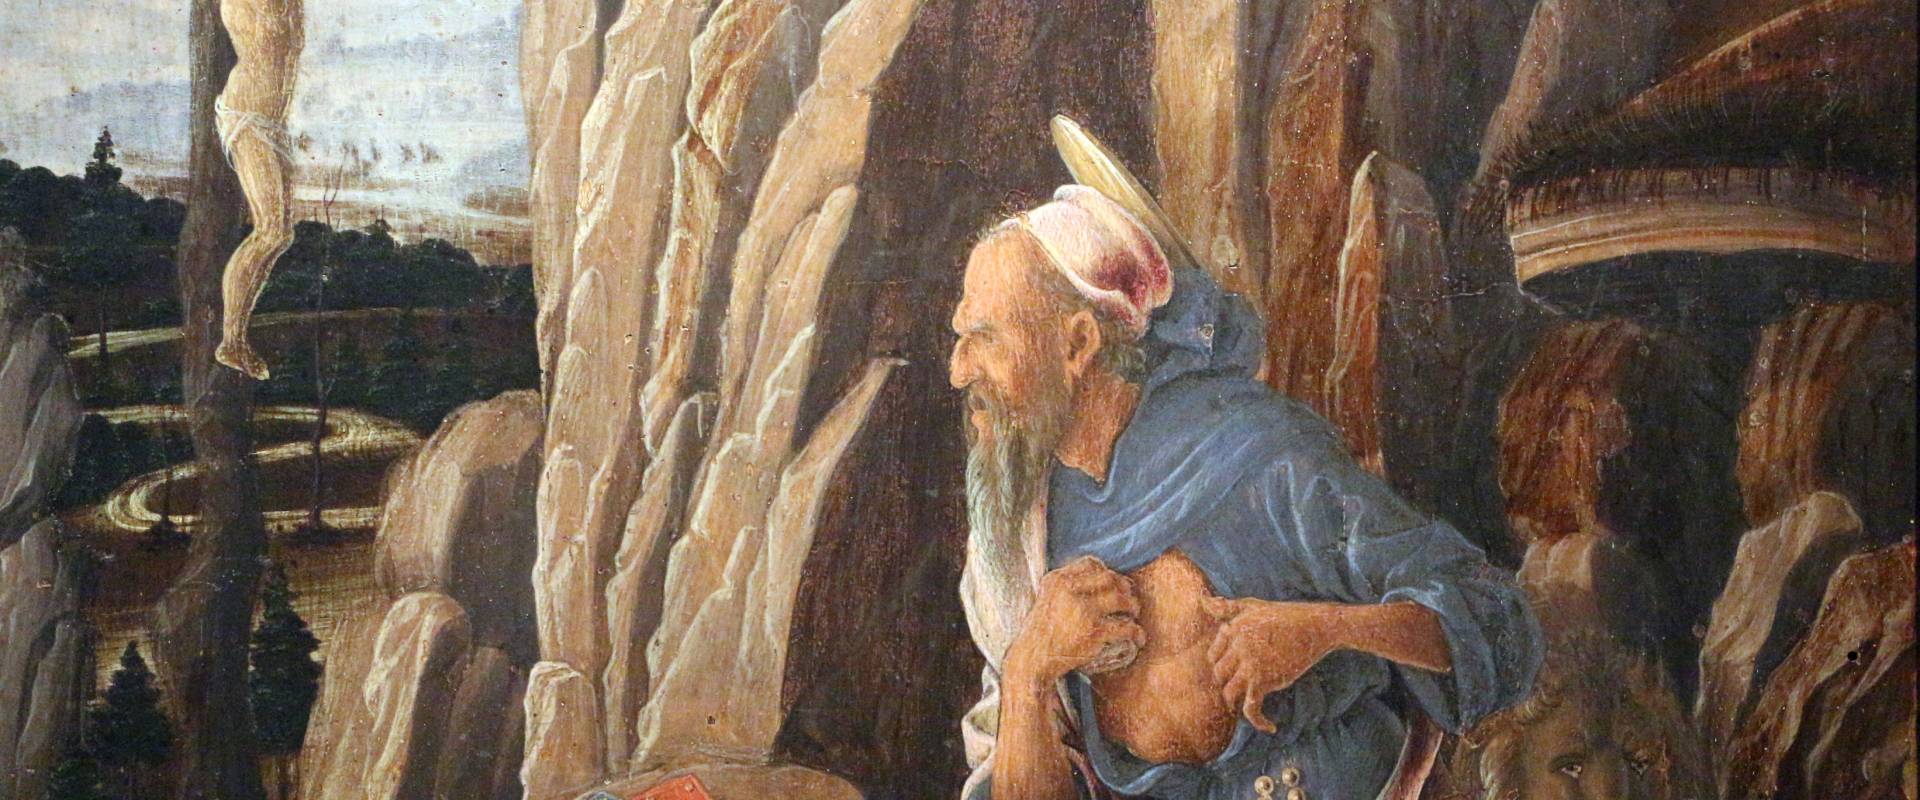 Marco zoppo, san girolamo penitente, 1470 ca., 03 foto di Sailko